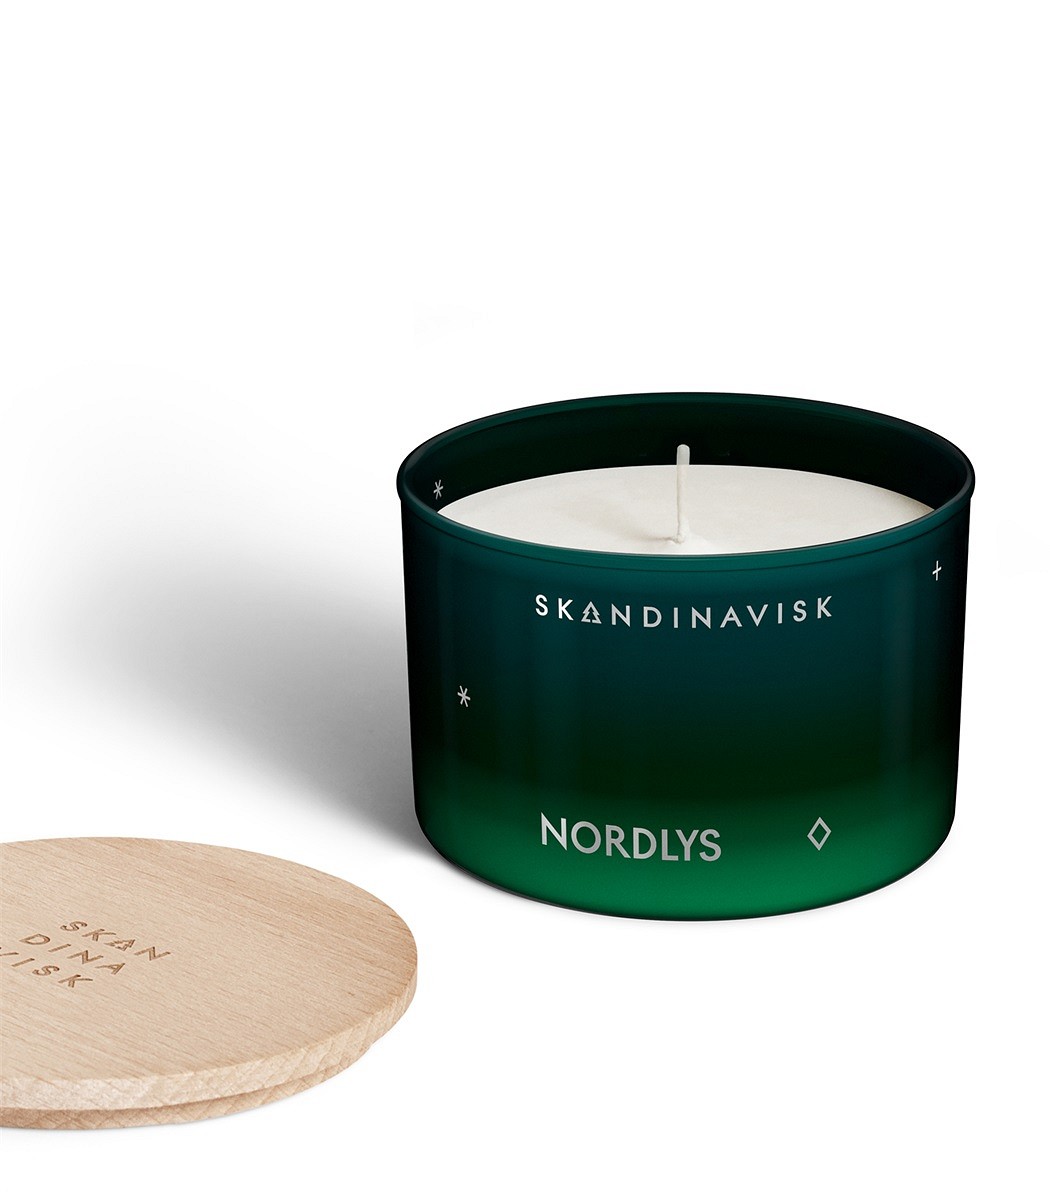 Skandinavisk Nordlys Northern Lights Scented Candle - 90 gr